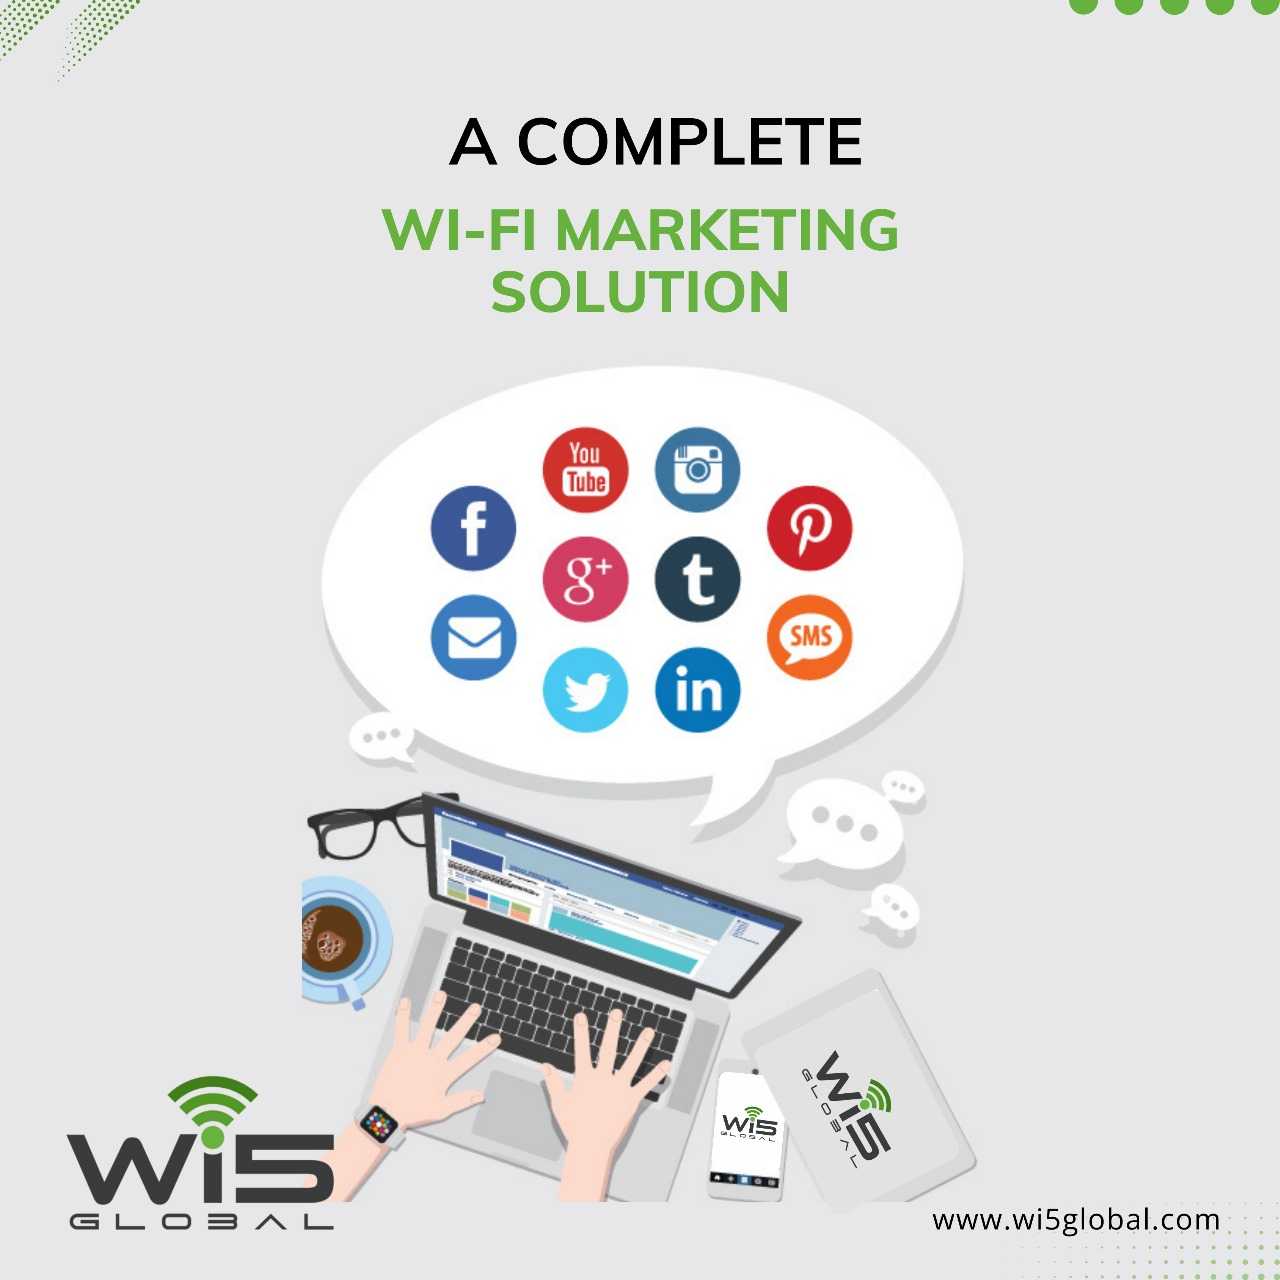 wifi marketing_wi5global